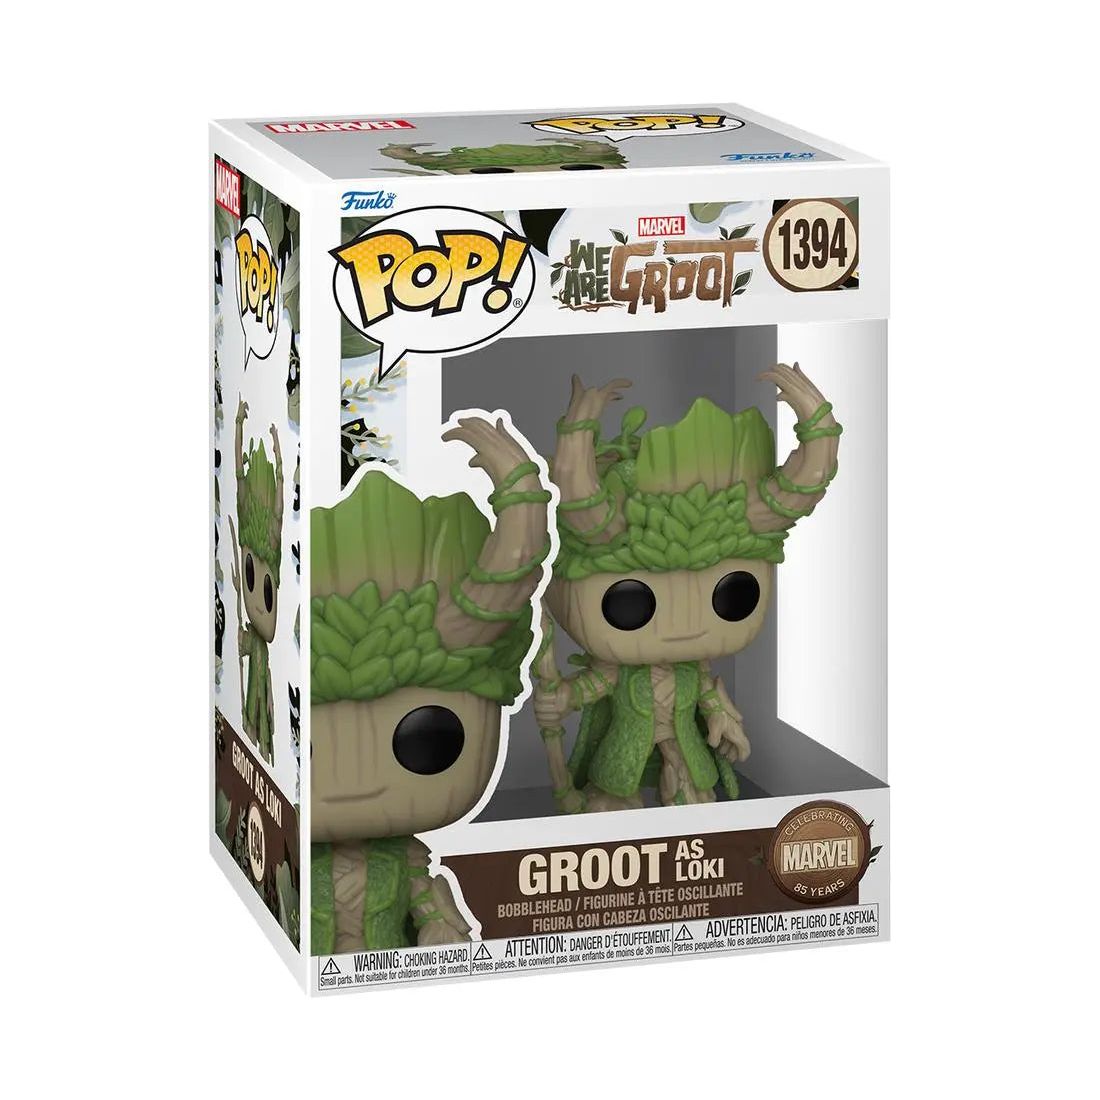 Funko Pop! Marvel We Are Groot 1392 Groot as Loki Funko